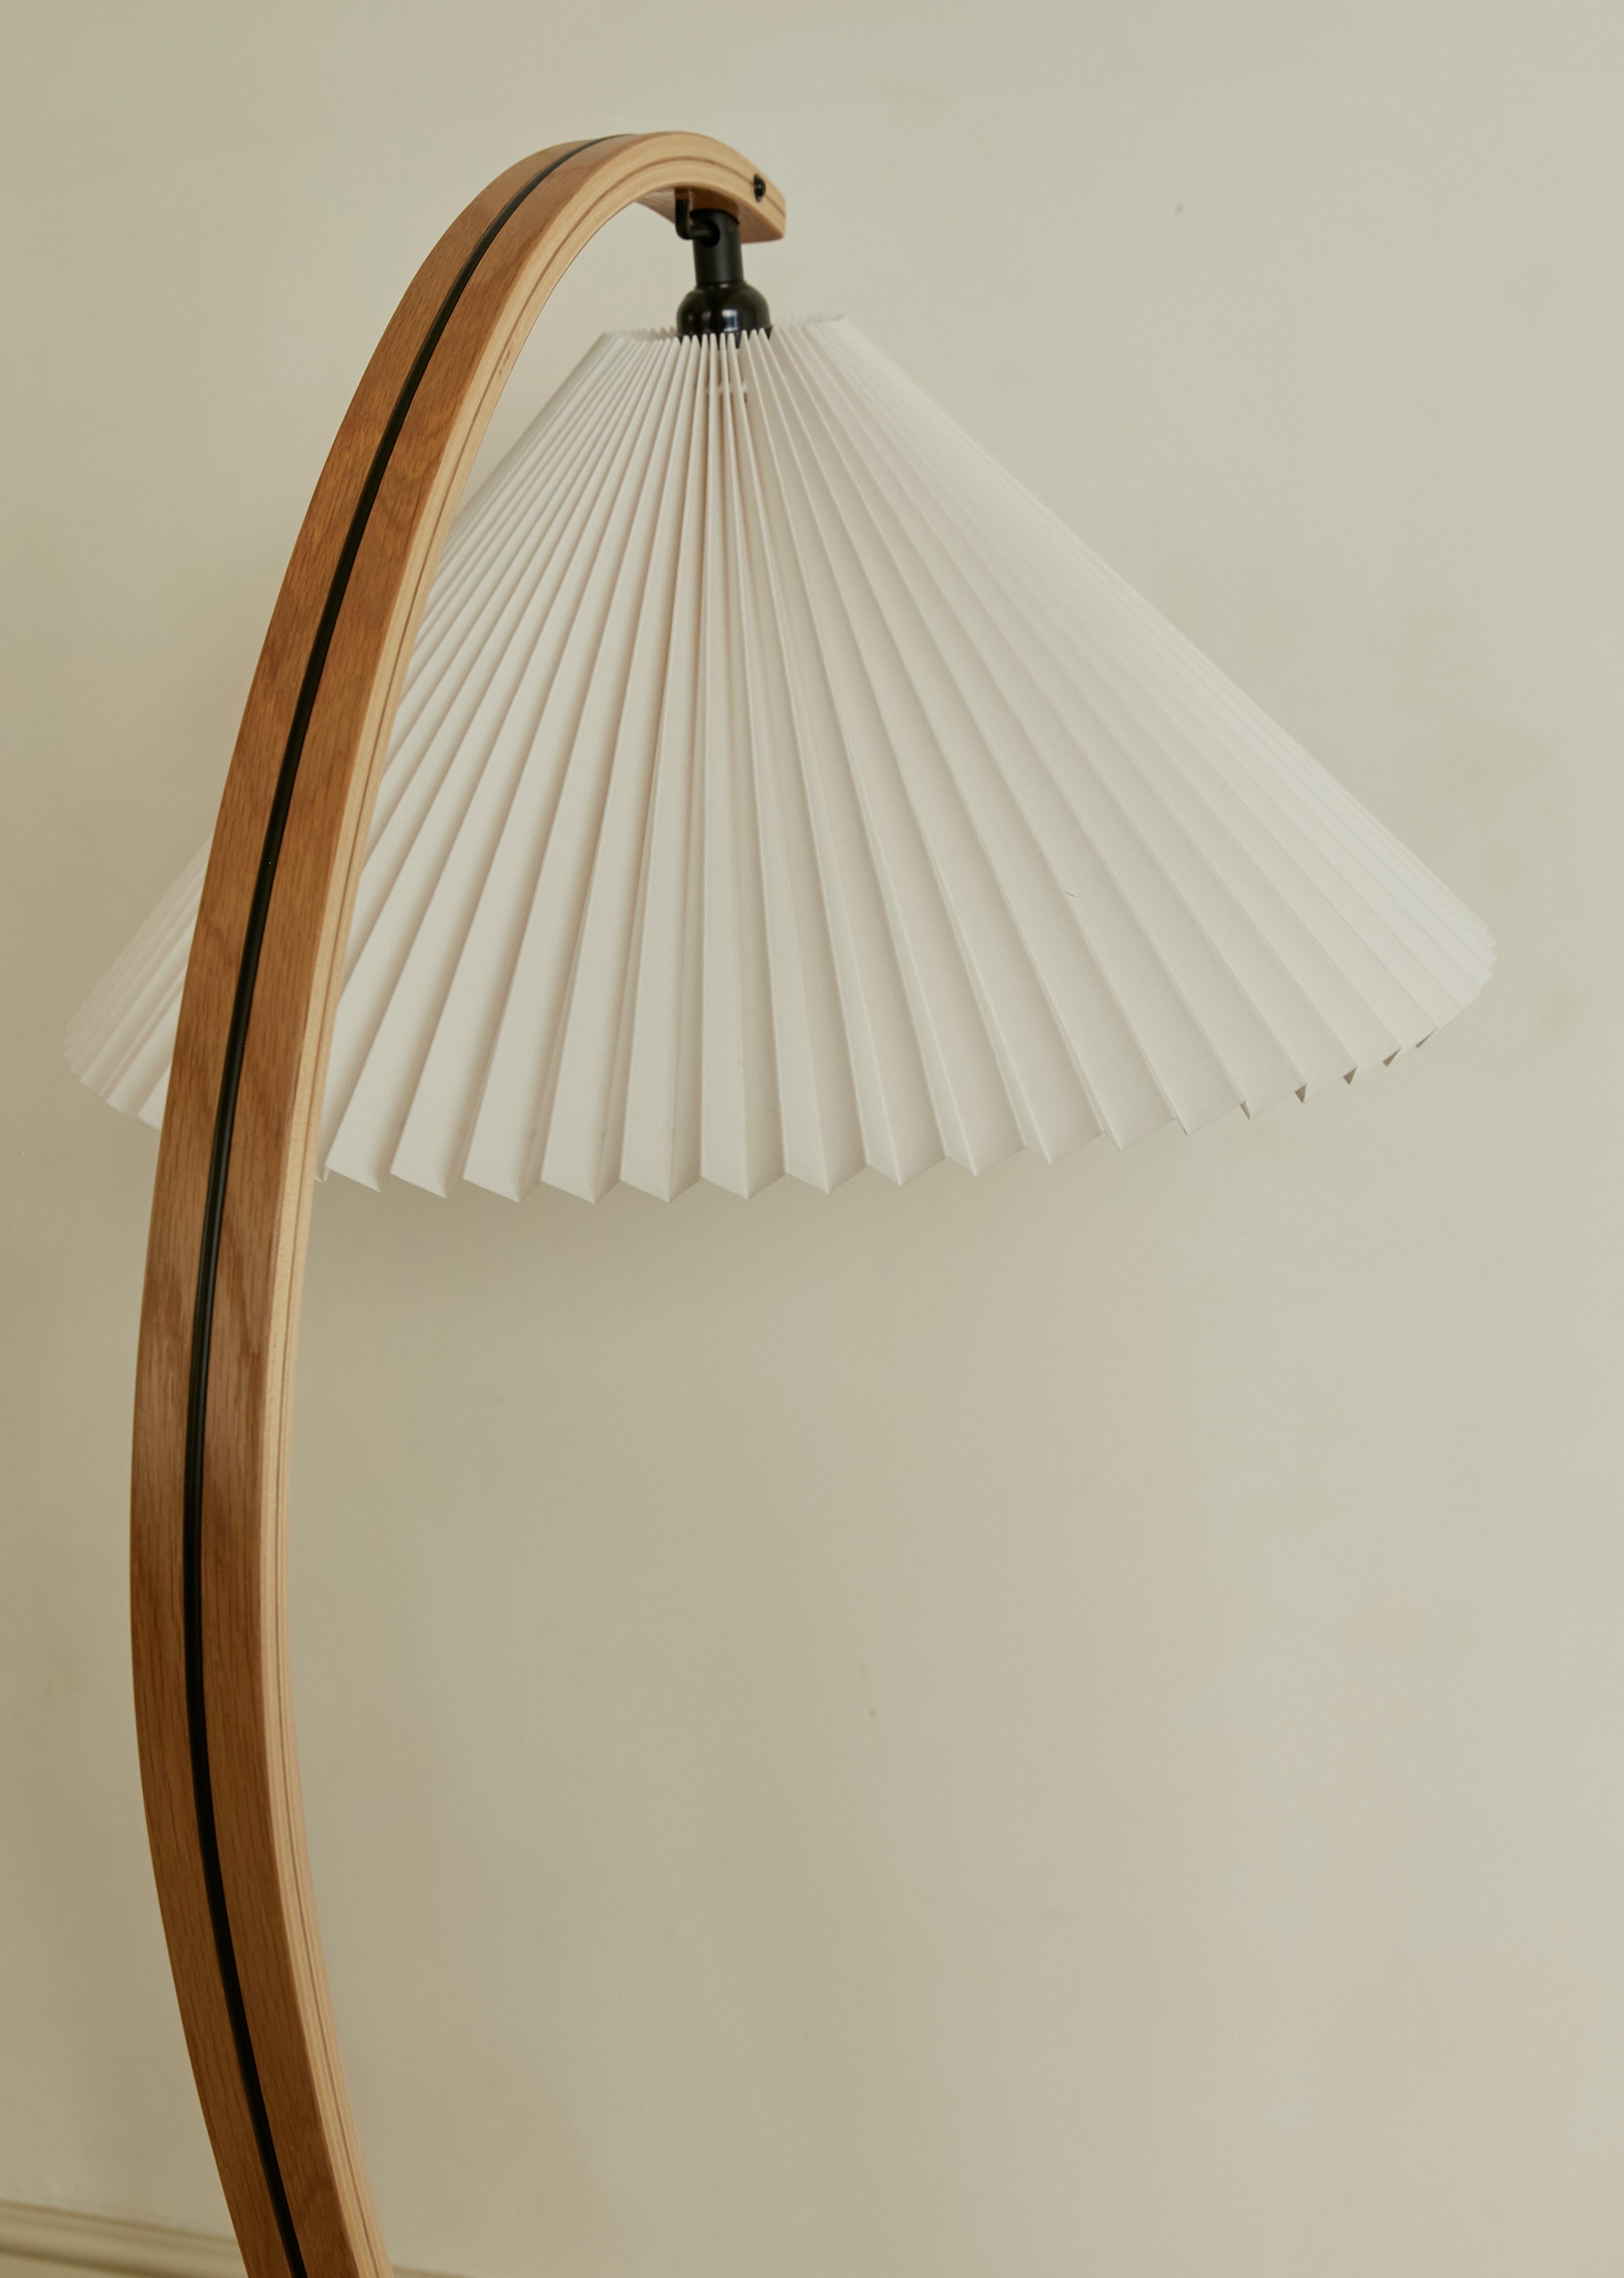 Veneer Timberline floor lamp by Gubi, 1970's by Mads Caprani. Scandinavian design For Sale